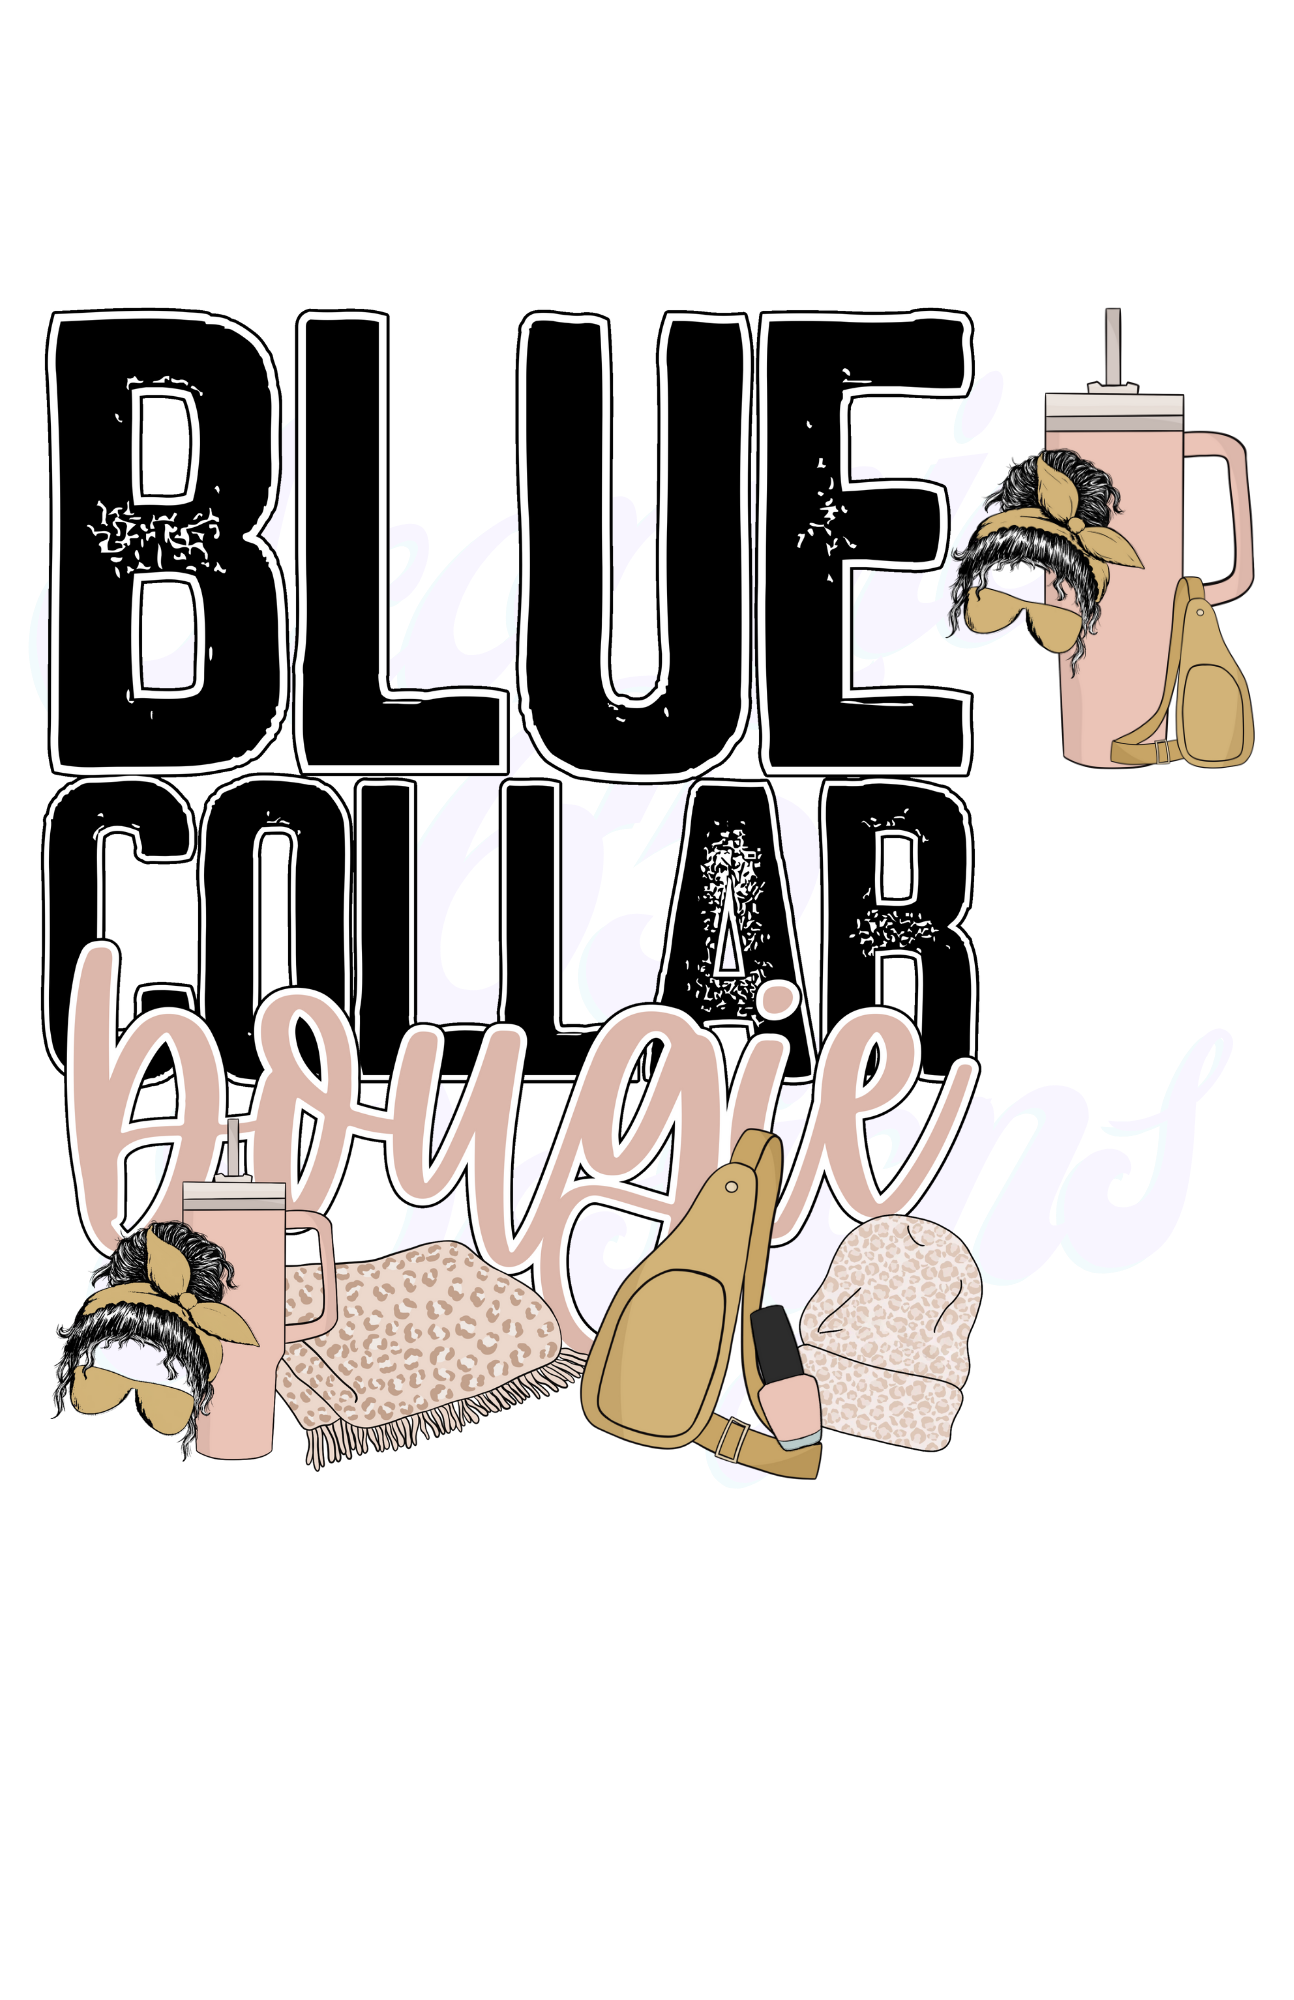 Blue Collar Bougie Scorpio 65 Designs